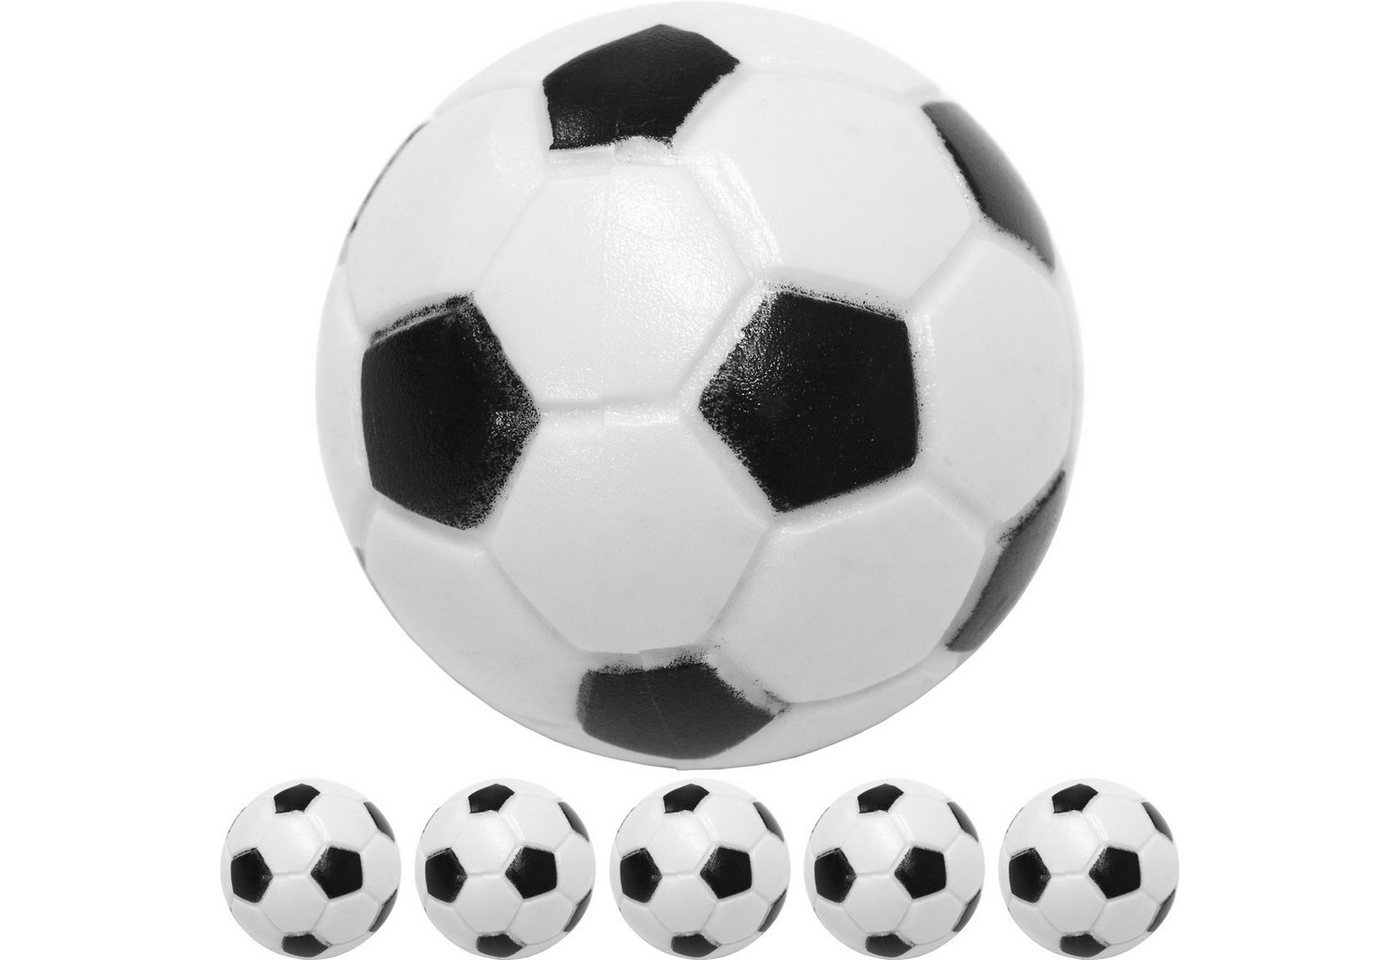 GAMES PLANET Spielball Games Planet Kicker Bälle, 5 oder 10 Stück (Set, 5er Pack), Farbe: schwarz/weiß (Klassische Fußball-Optik), hart und schnell, Durchmesser 31mm, Tischfussball Kickerbälle Ball von GAMES PLANET